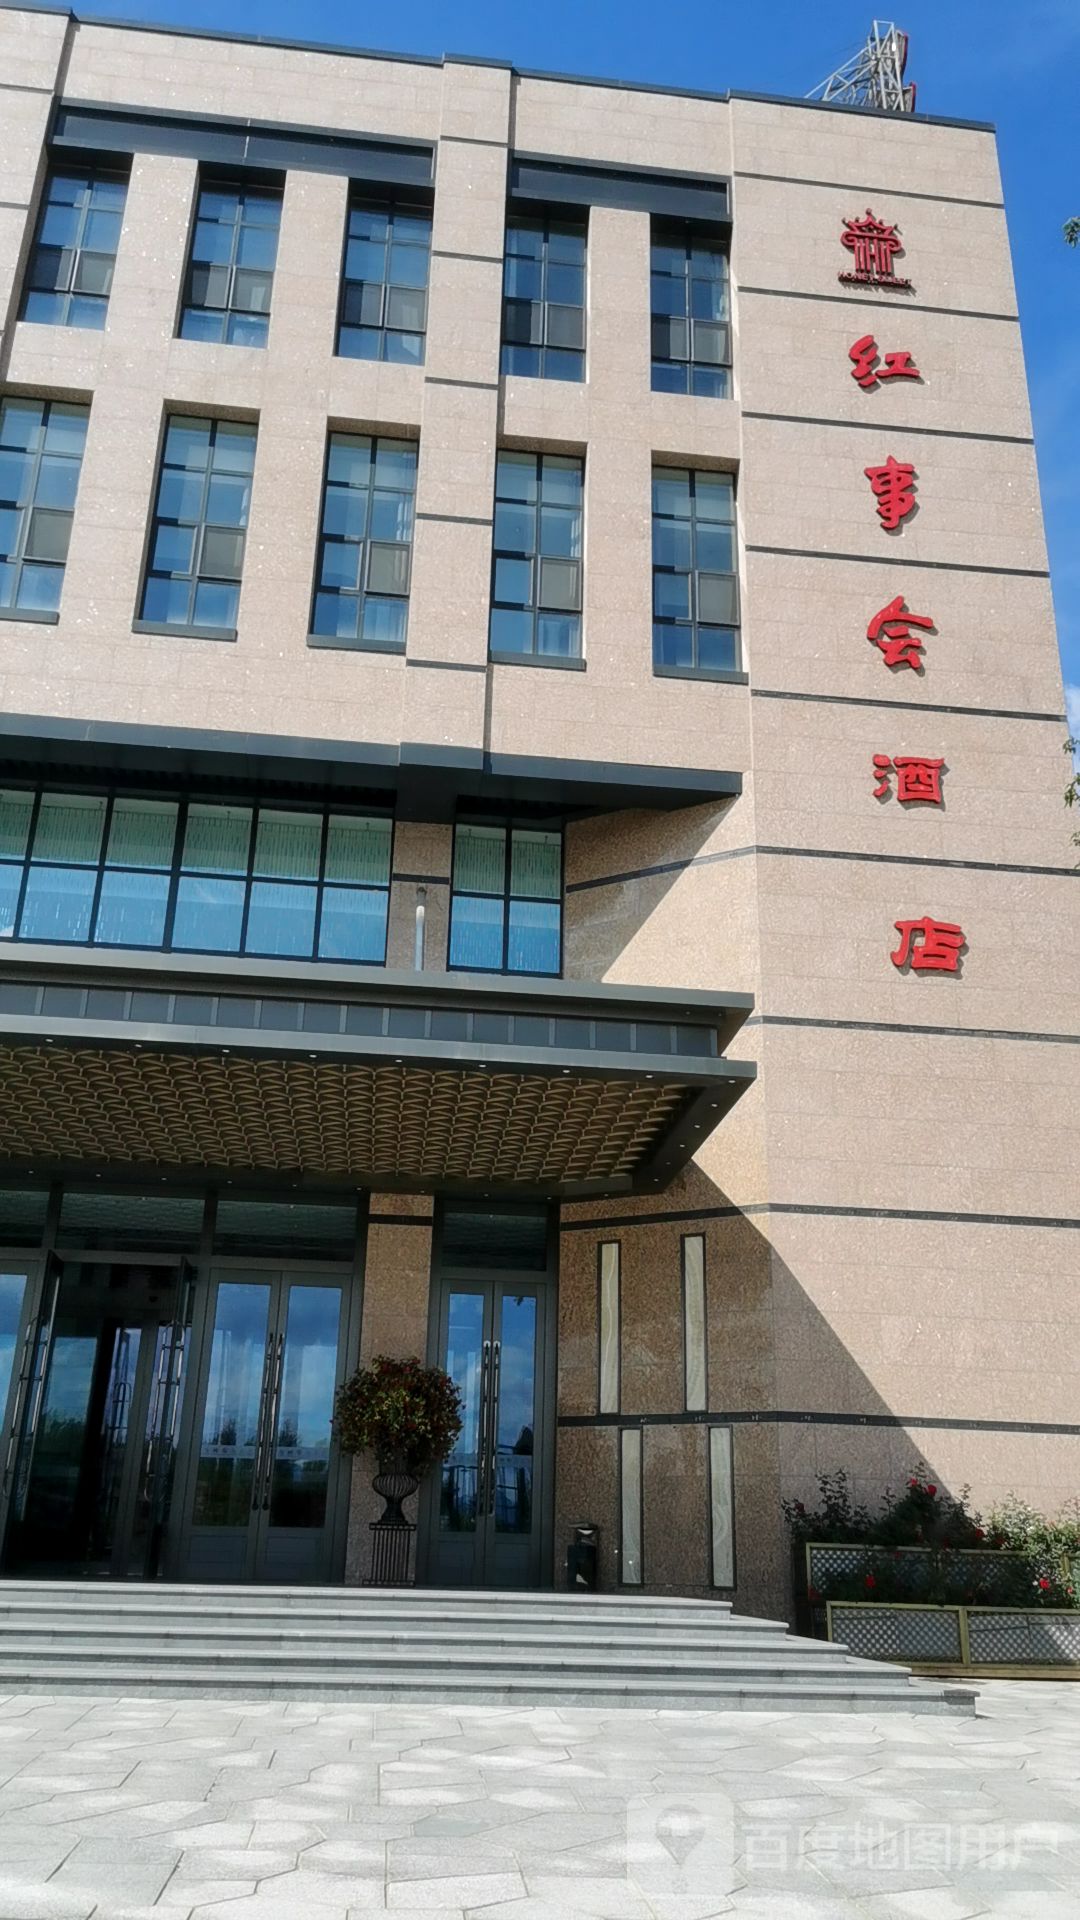 吉林市红事会婚宴酒店图片